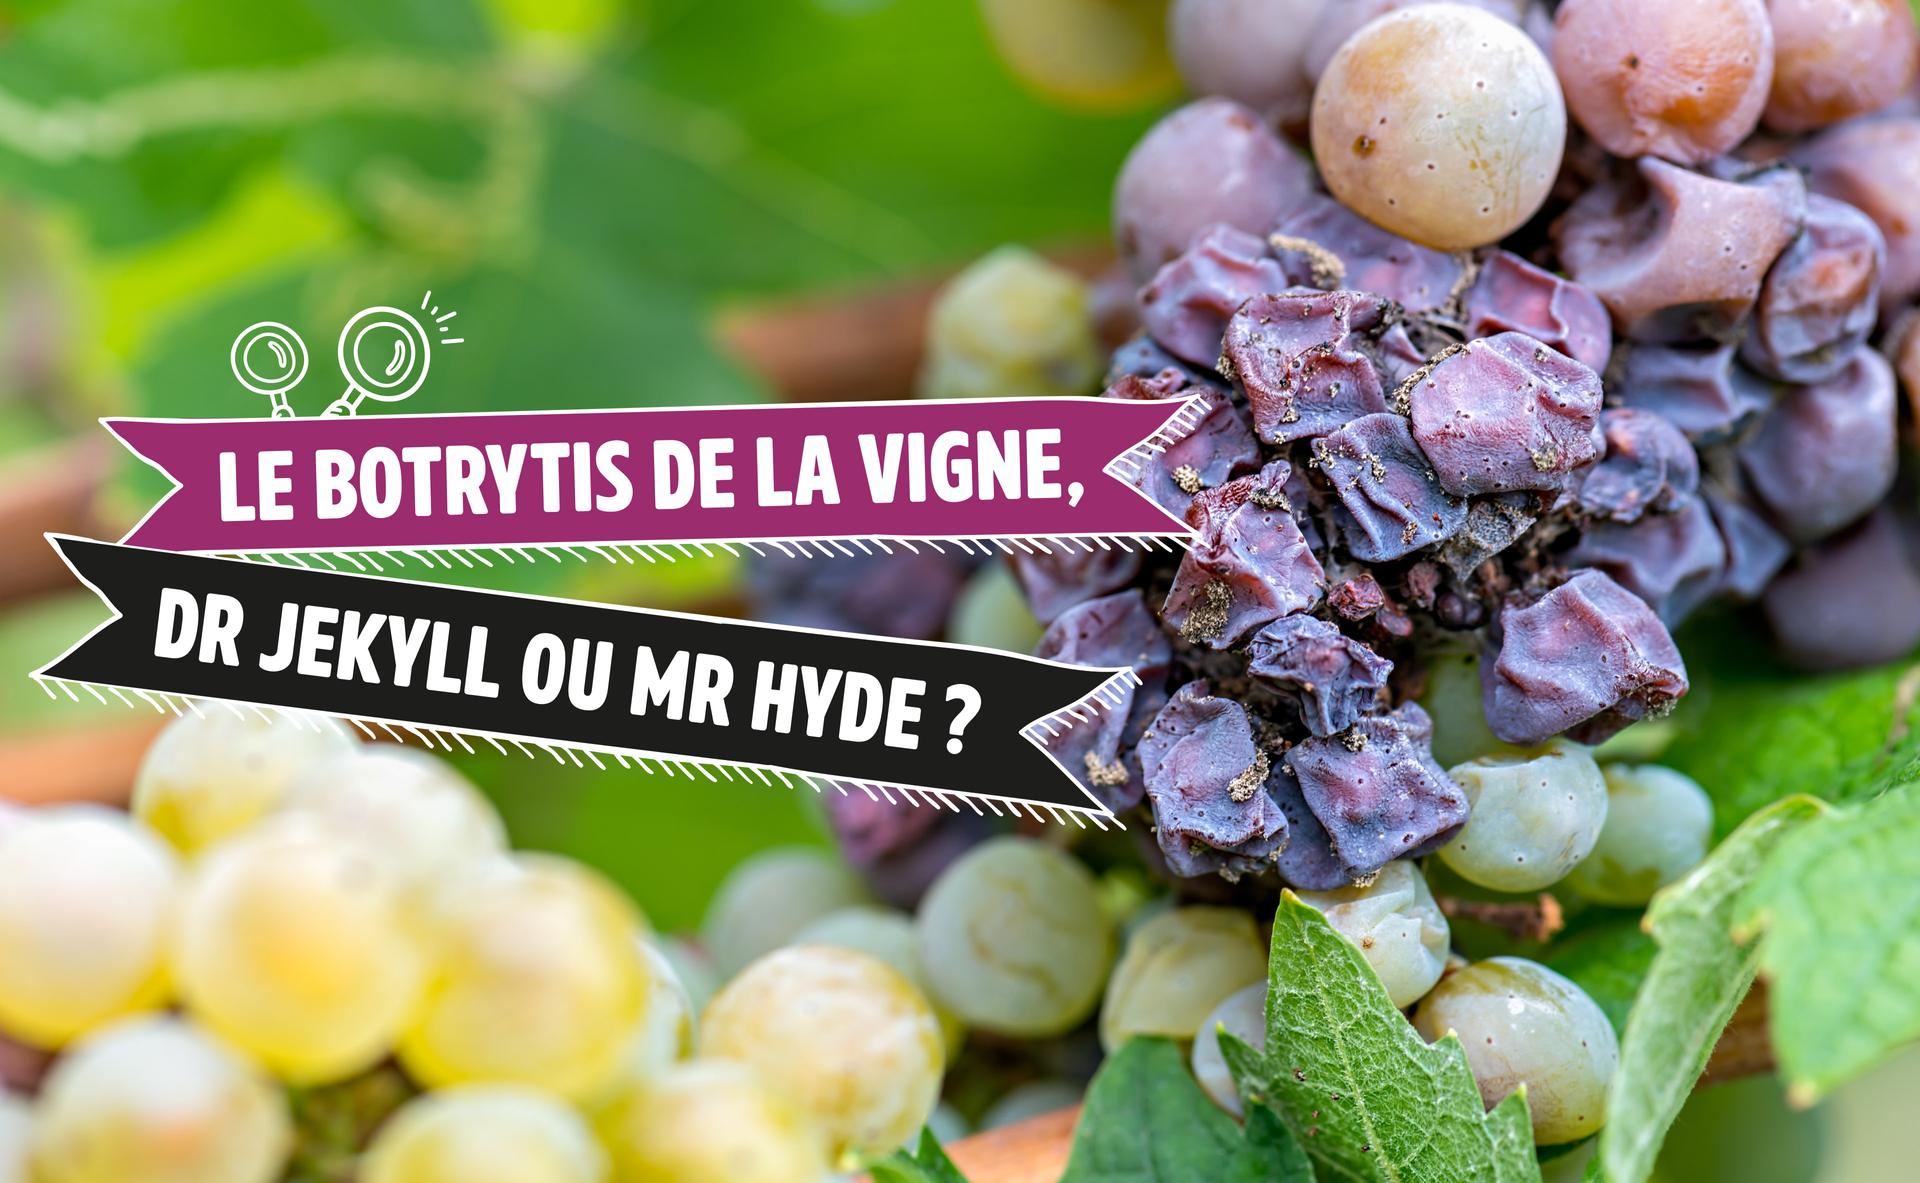 Le Botrytis de la vigne, Dr Jekyll ou Mr Hyde ?